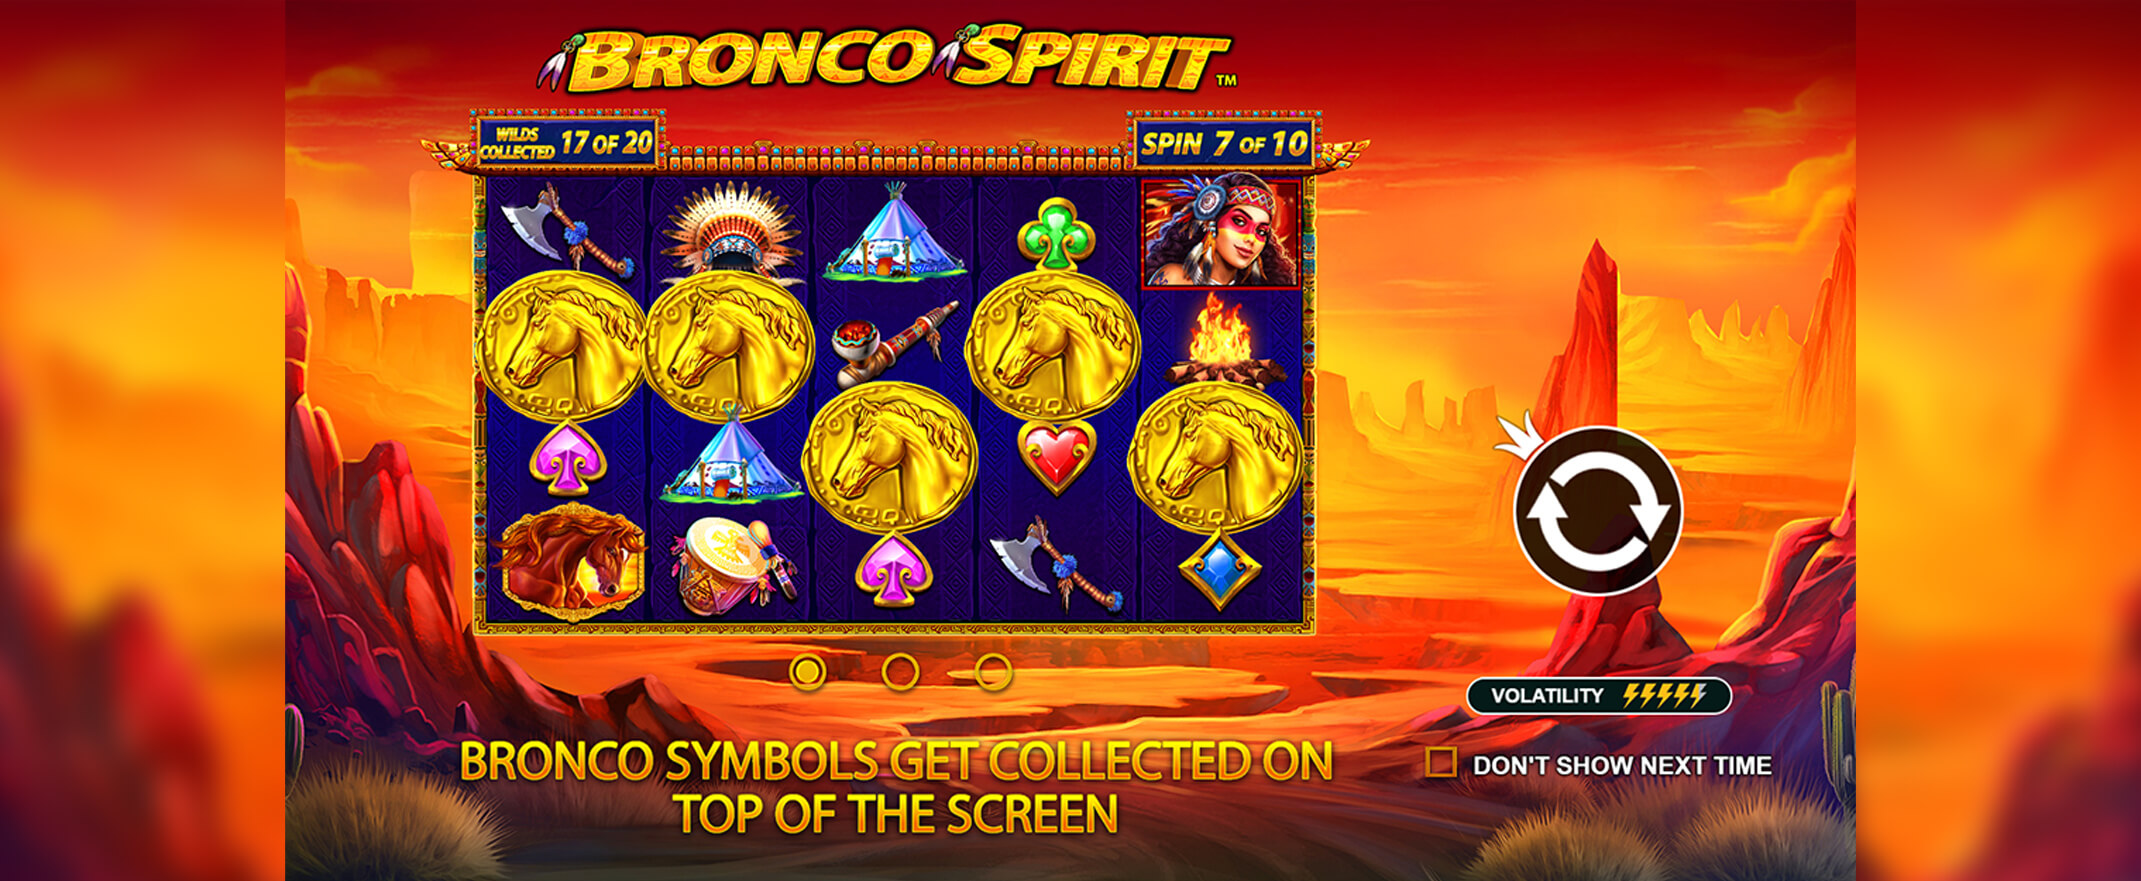 Bronco Spirit Spielautomaten Bewertung